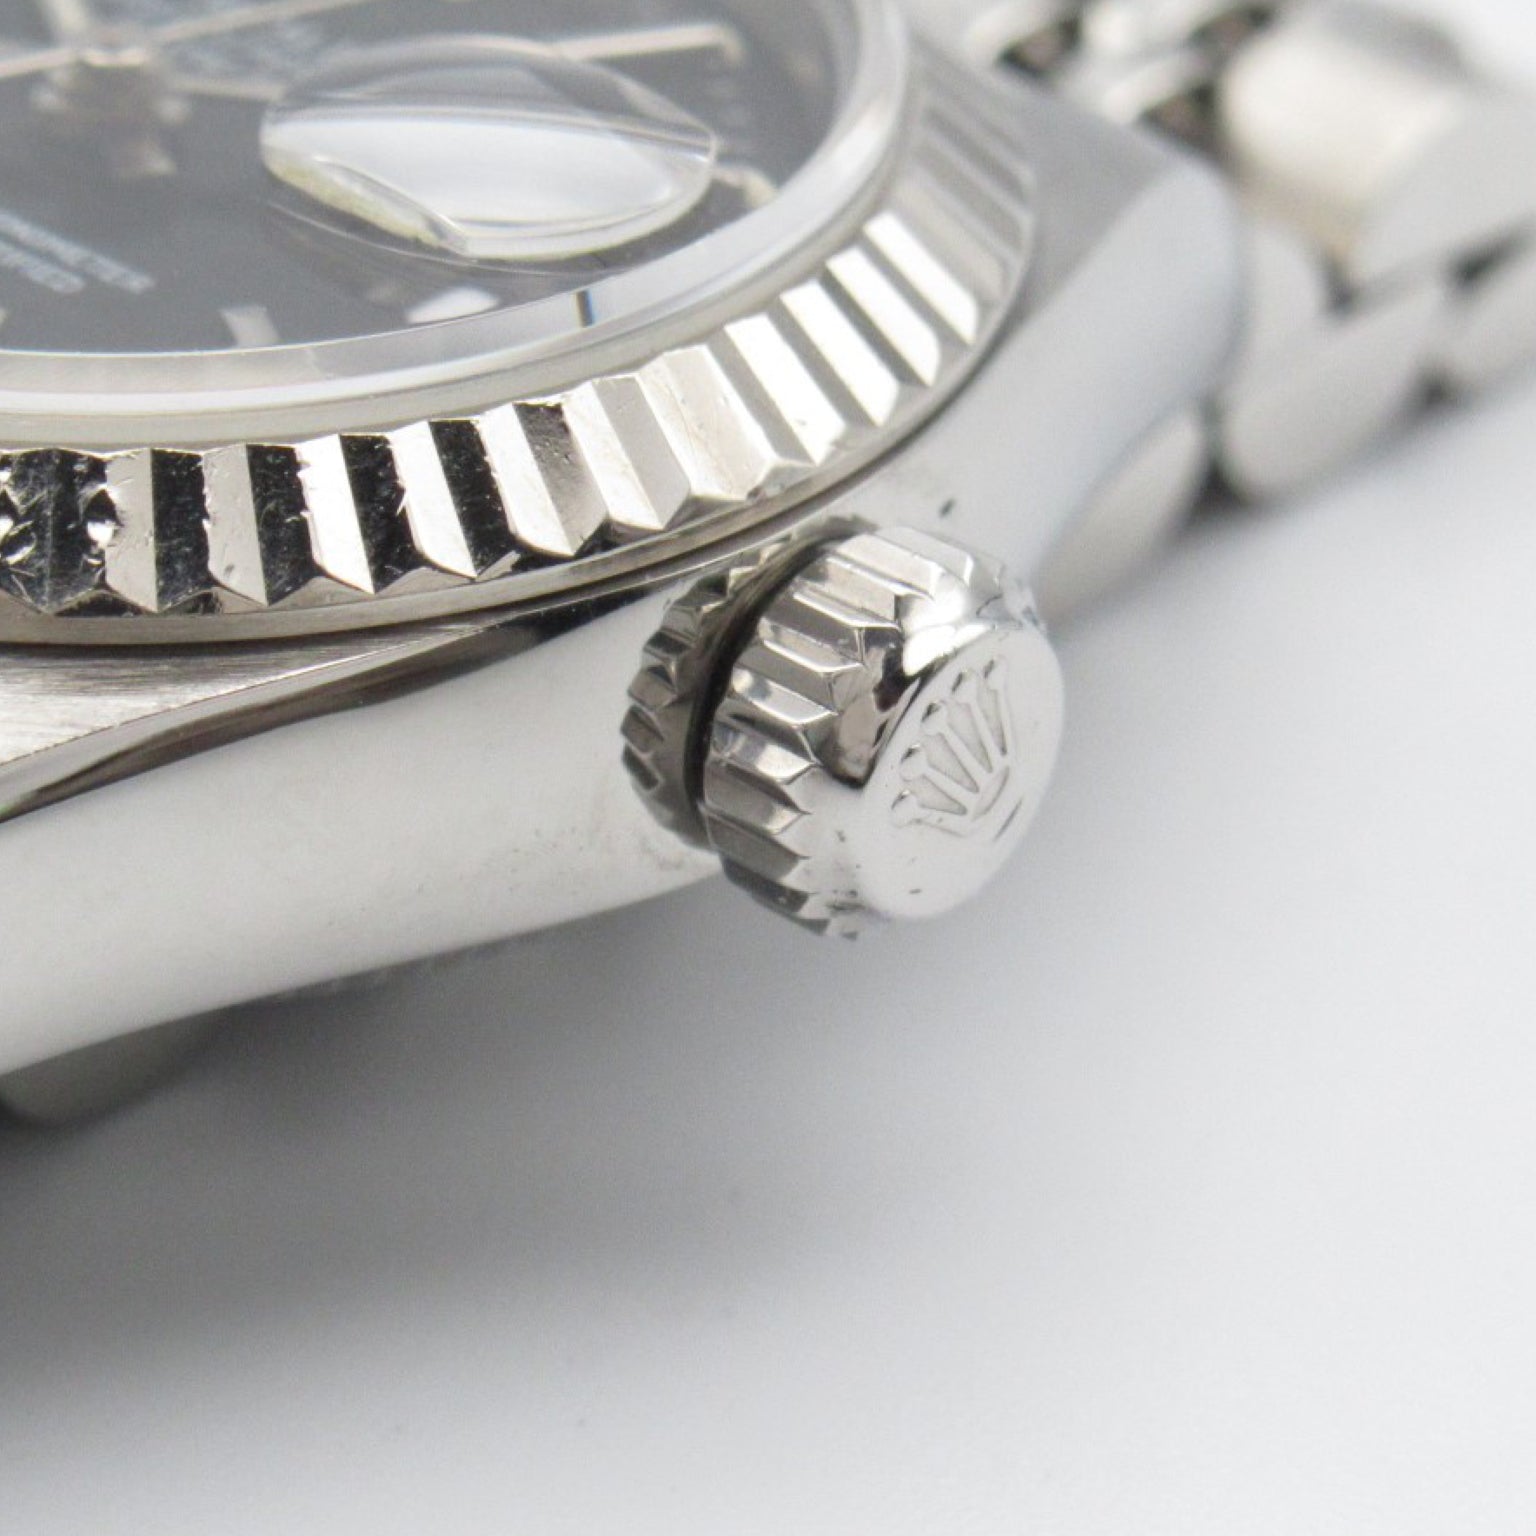 Rolex Rolex Datejust T  Watch Watch K18WG (White G) Stainless Steel  Black BA 69174